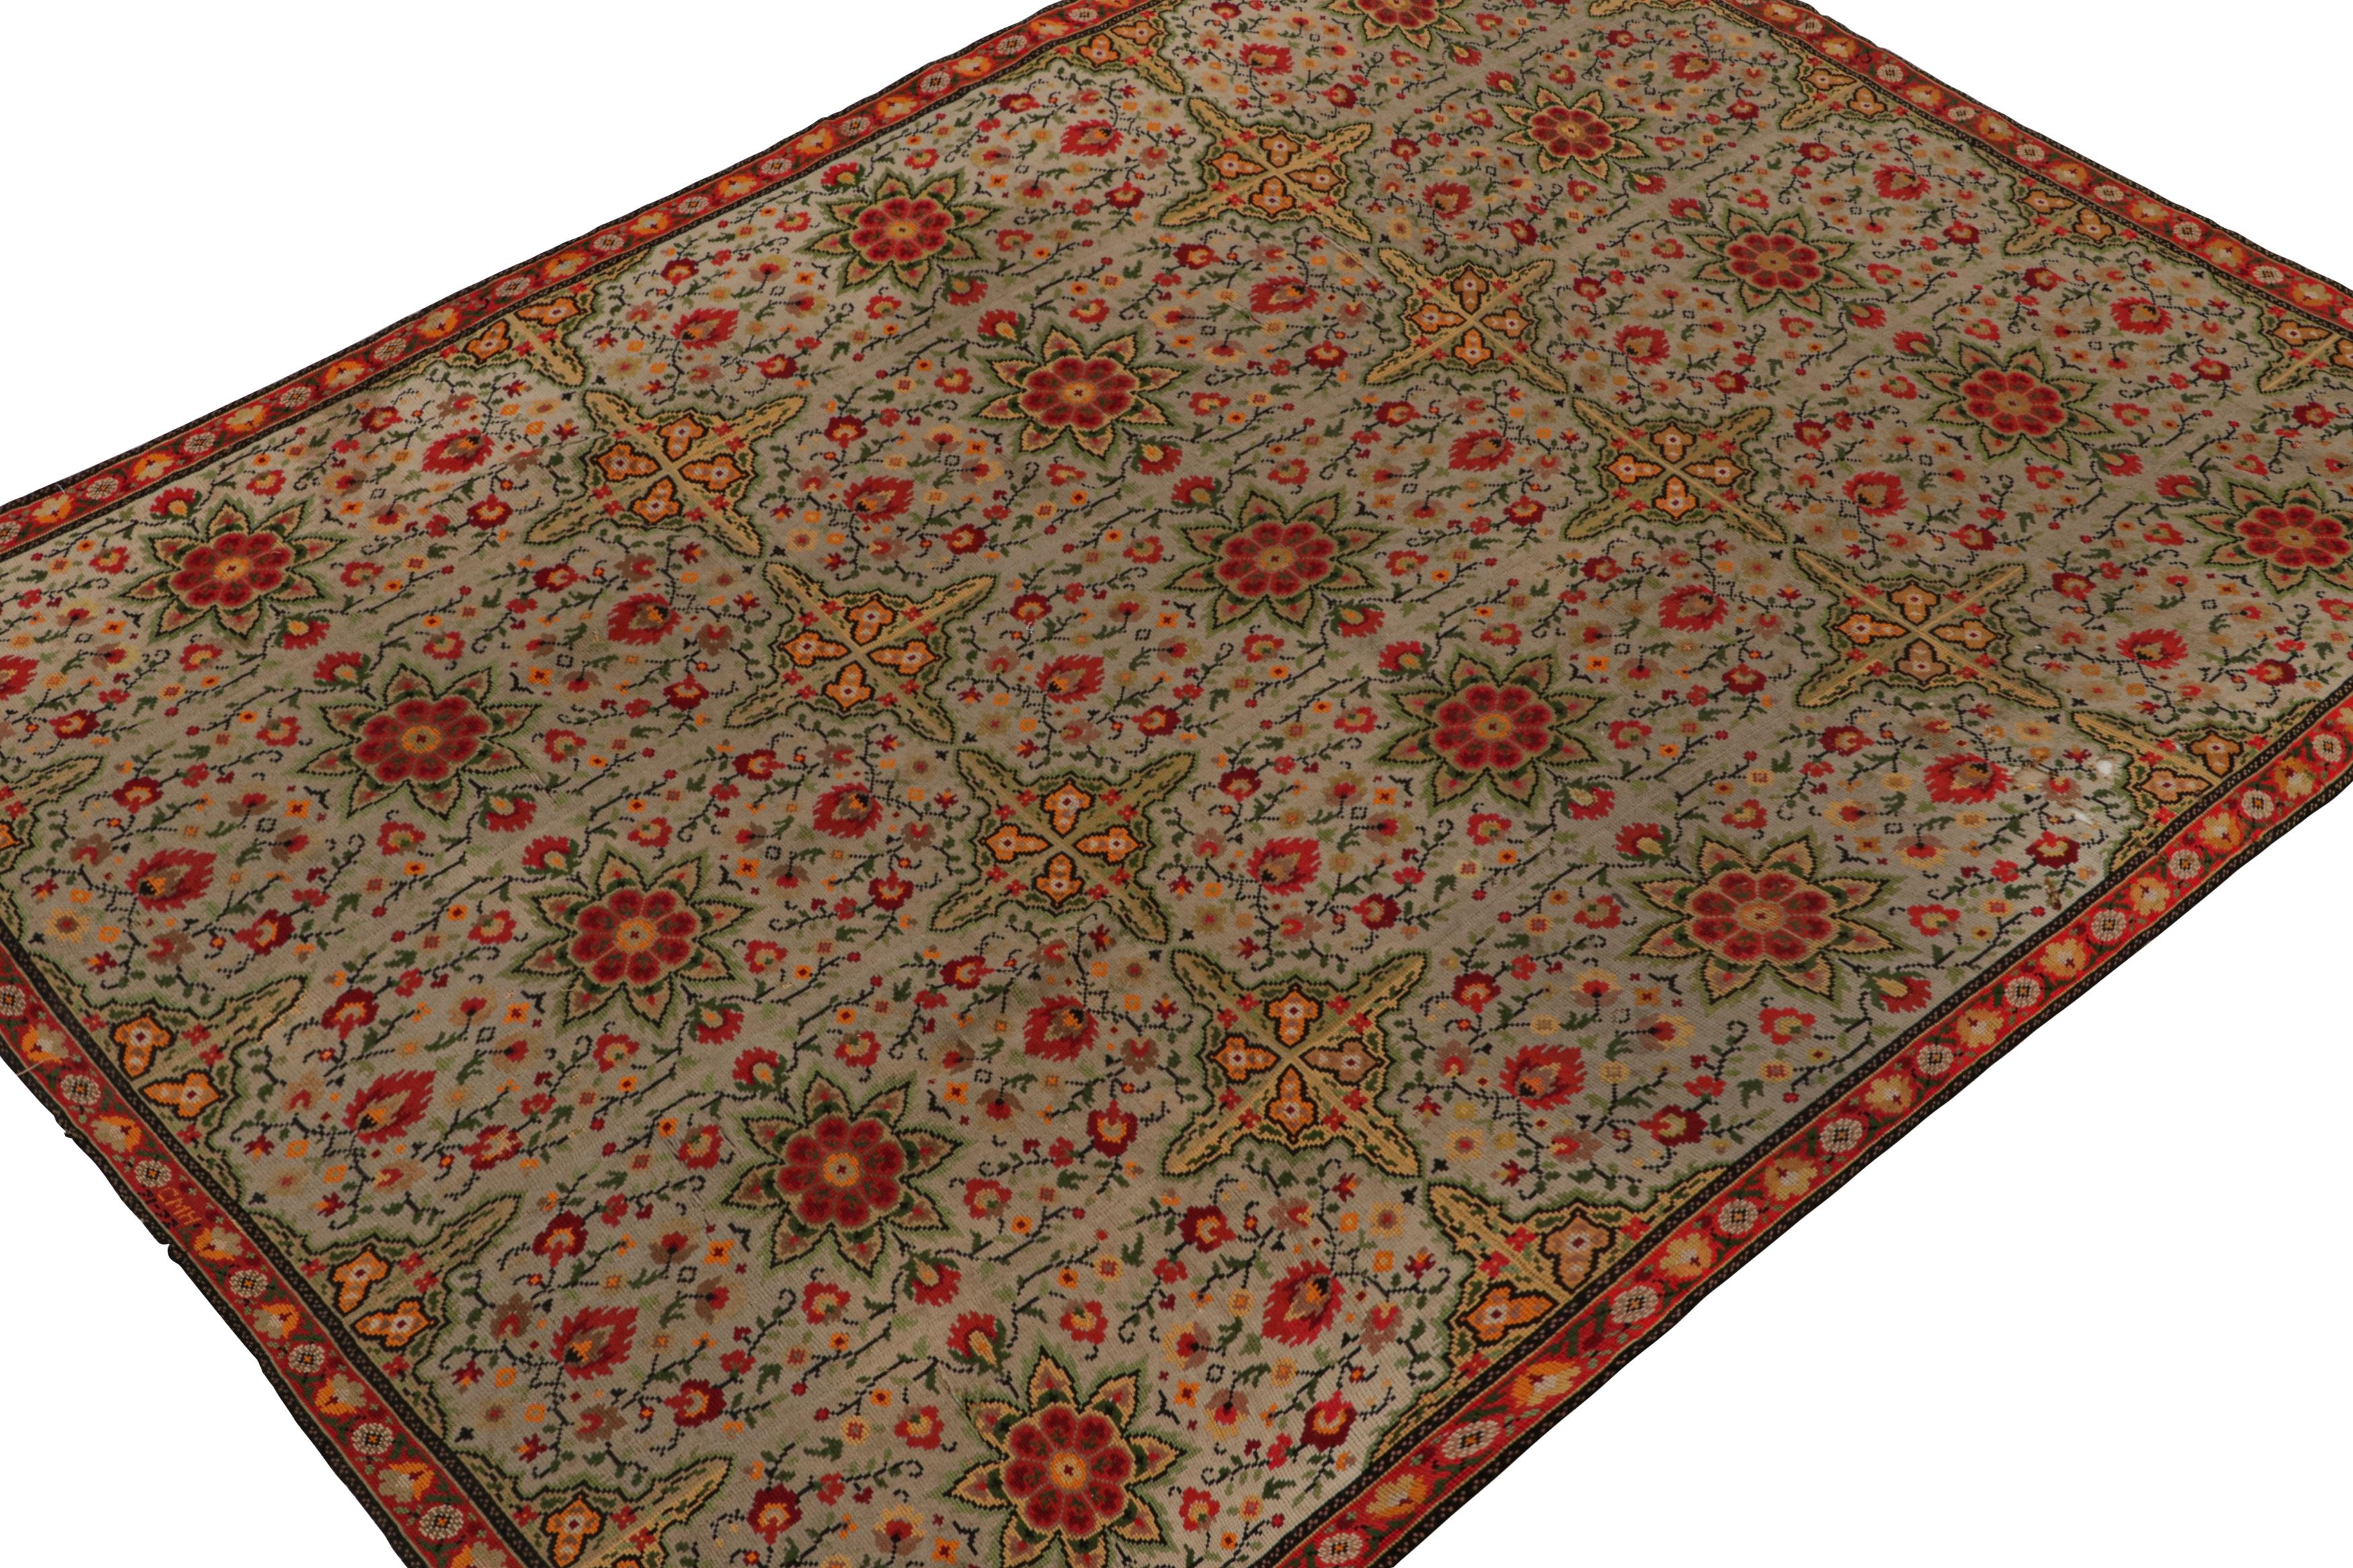 Tissé à la main en laine, vers 1920-1930, ce tapis ancien à aiguilles françaises de 7x10 présente un champ beige avec des notes taupe, et des motifs floraux en rouge et vert. 

Sur le Design : 

Les connaisseurs admireront le mouvement et la